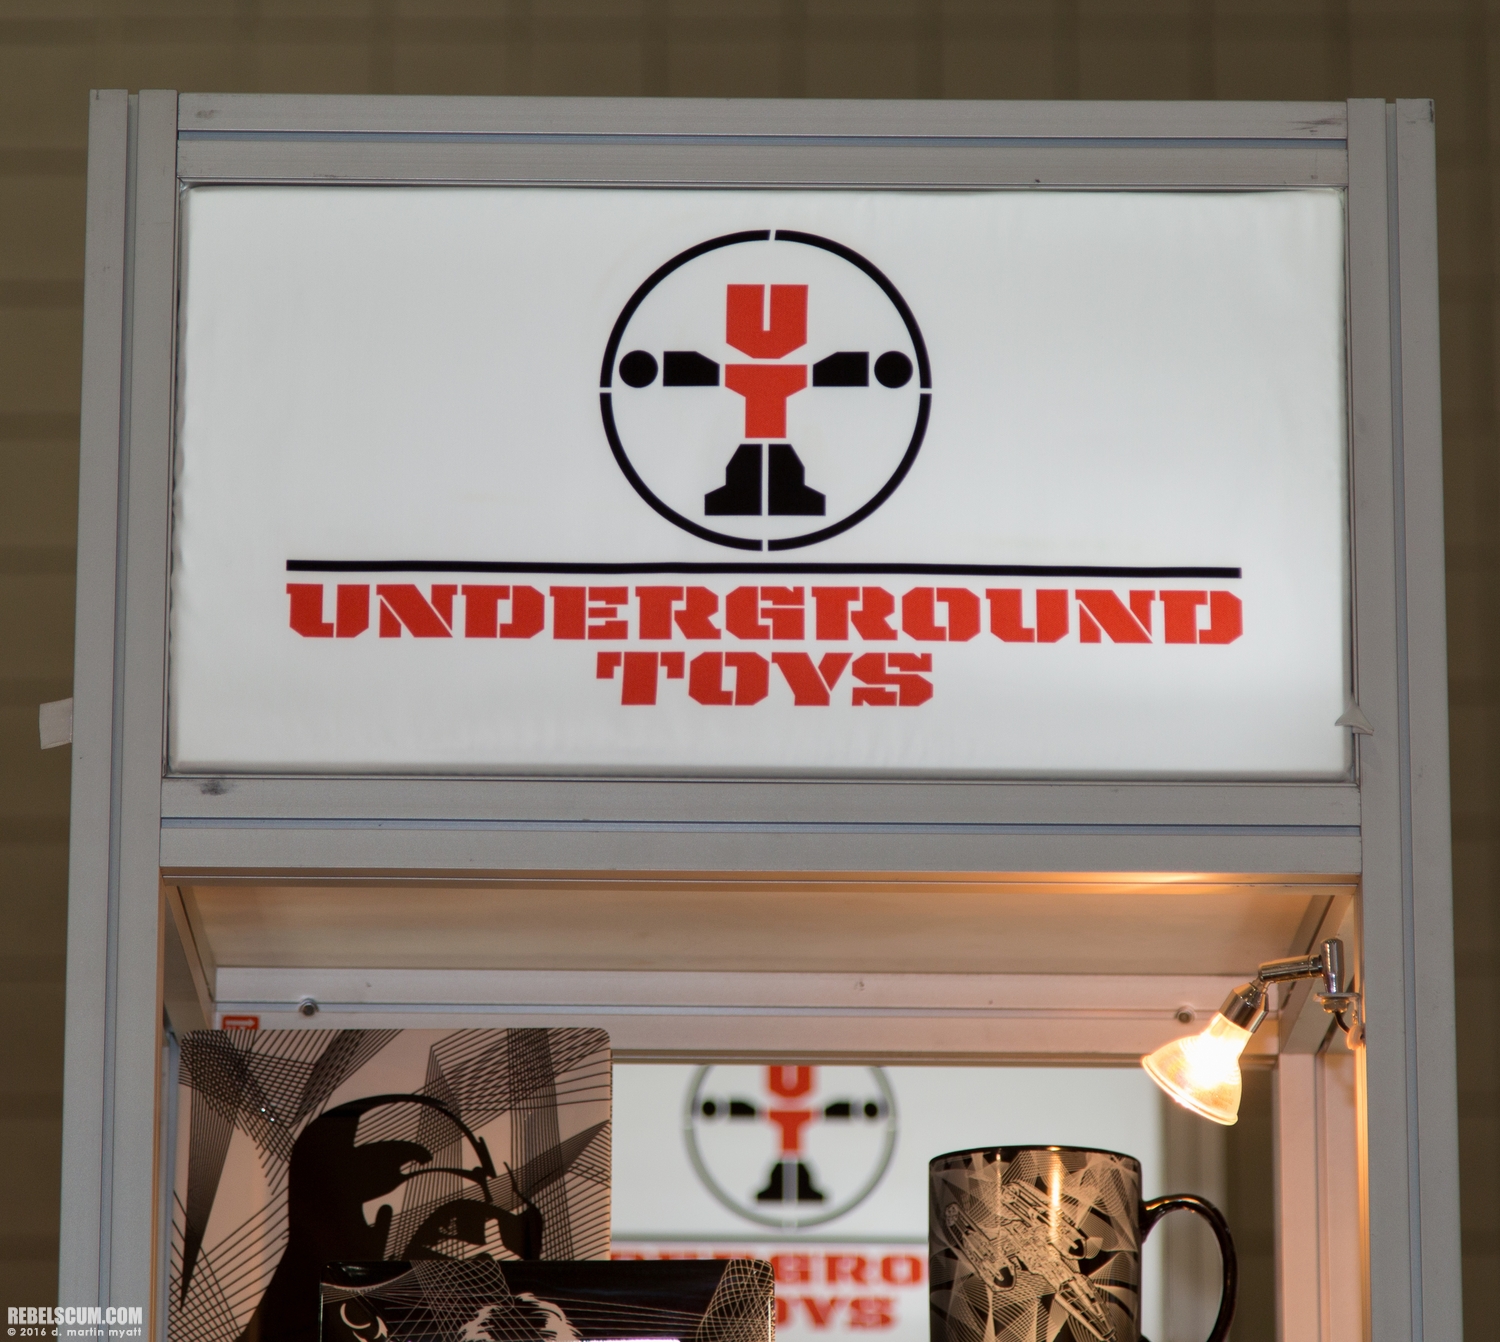 Underground-Toys-Star-Wars-2016-International-Toy-Fair-001.jpg